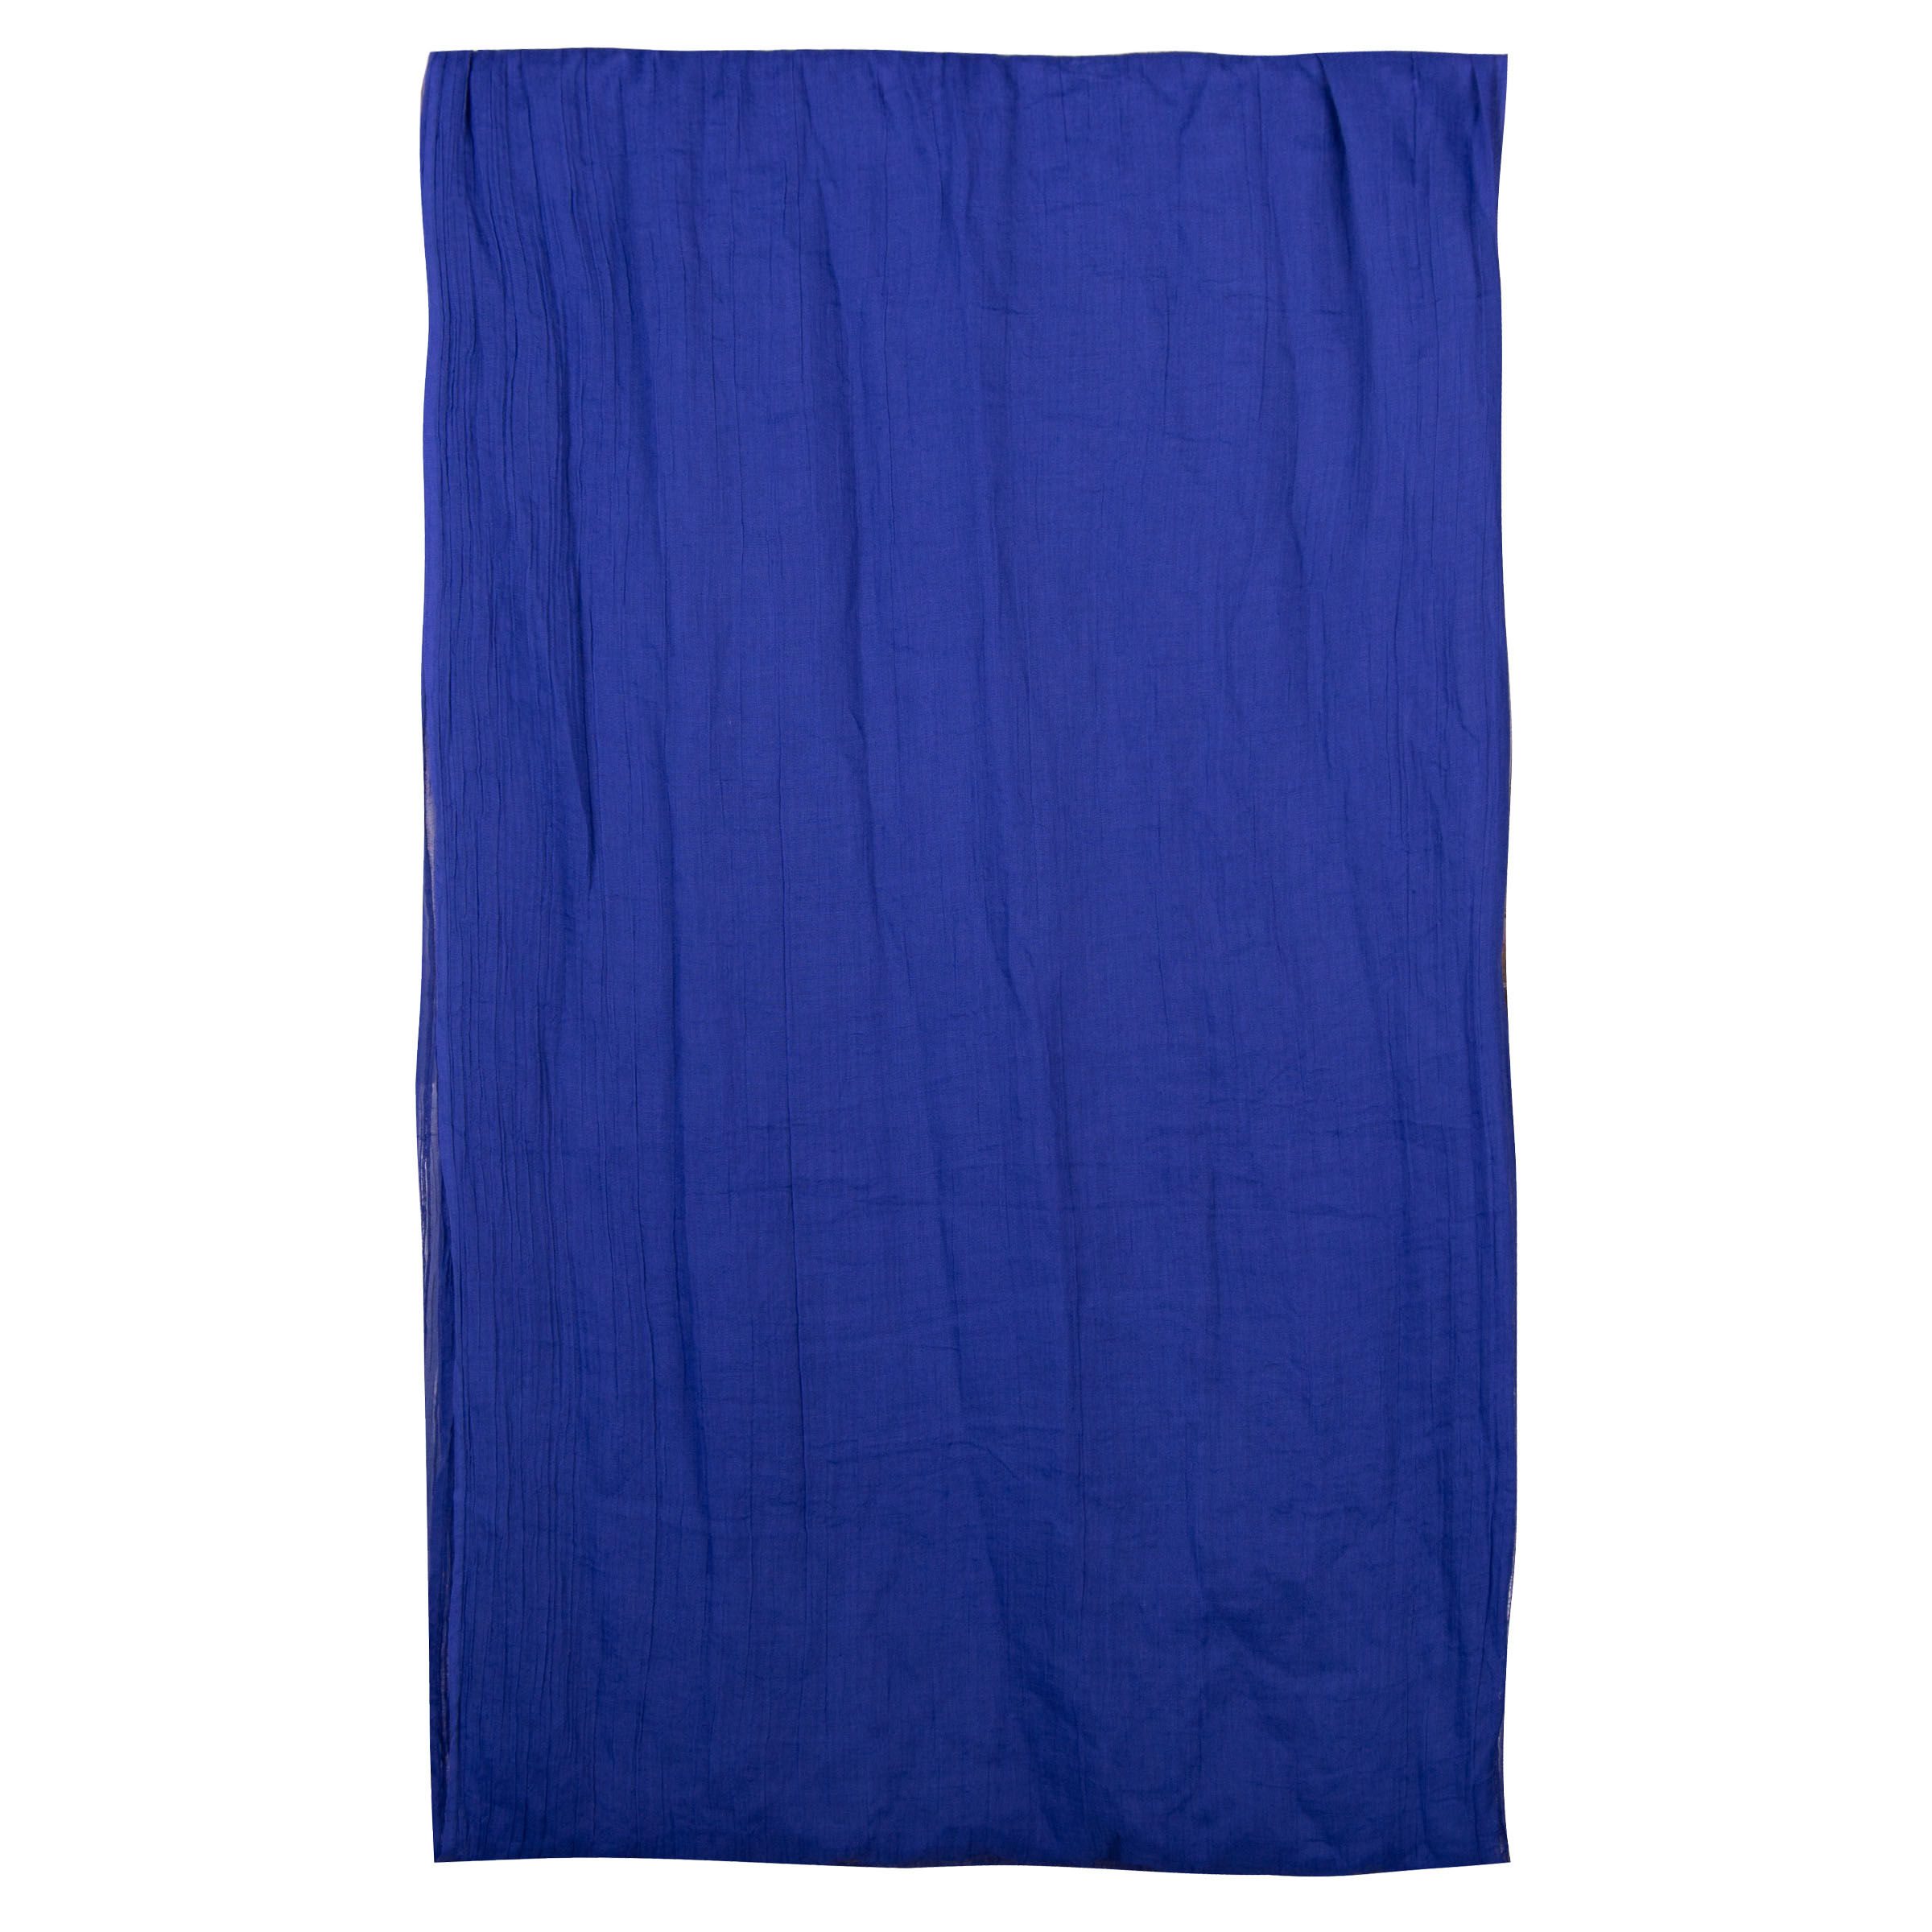 شال زنانه سیاوود مدل 7011101 PLAIN  رنگ آبی